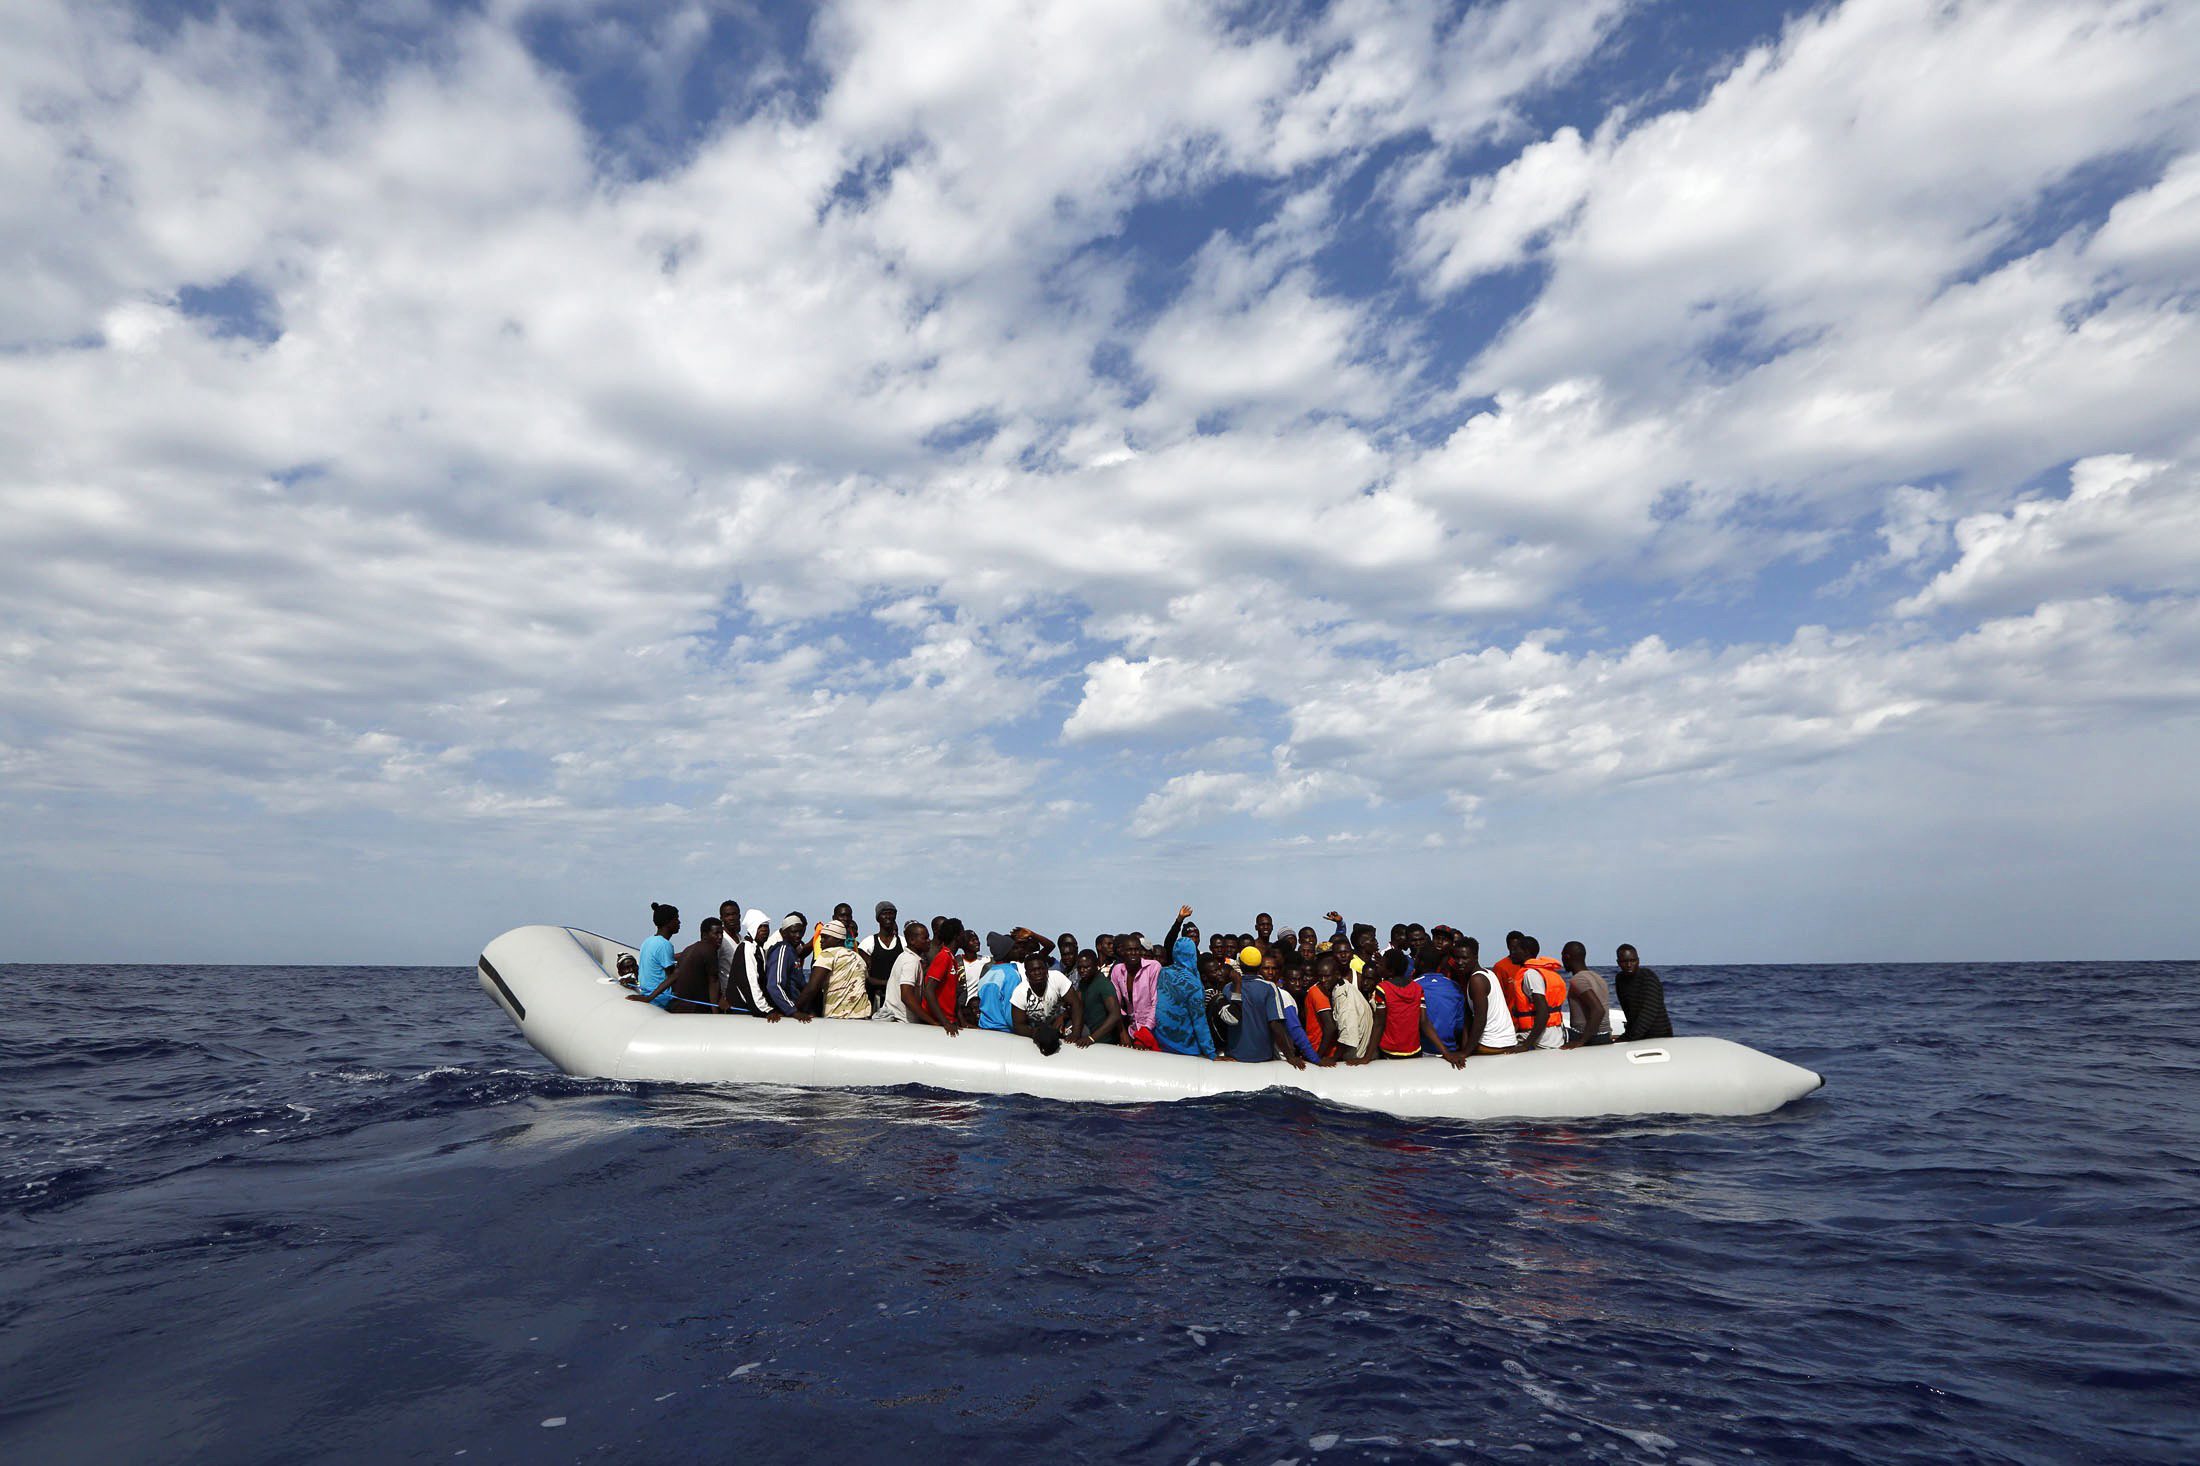 Όλο και περισσότεροι πρόσφυγες στη διαδρομή της κεντρικής Μεσογείου